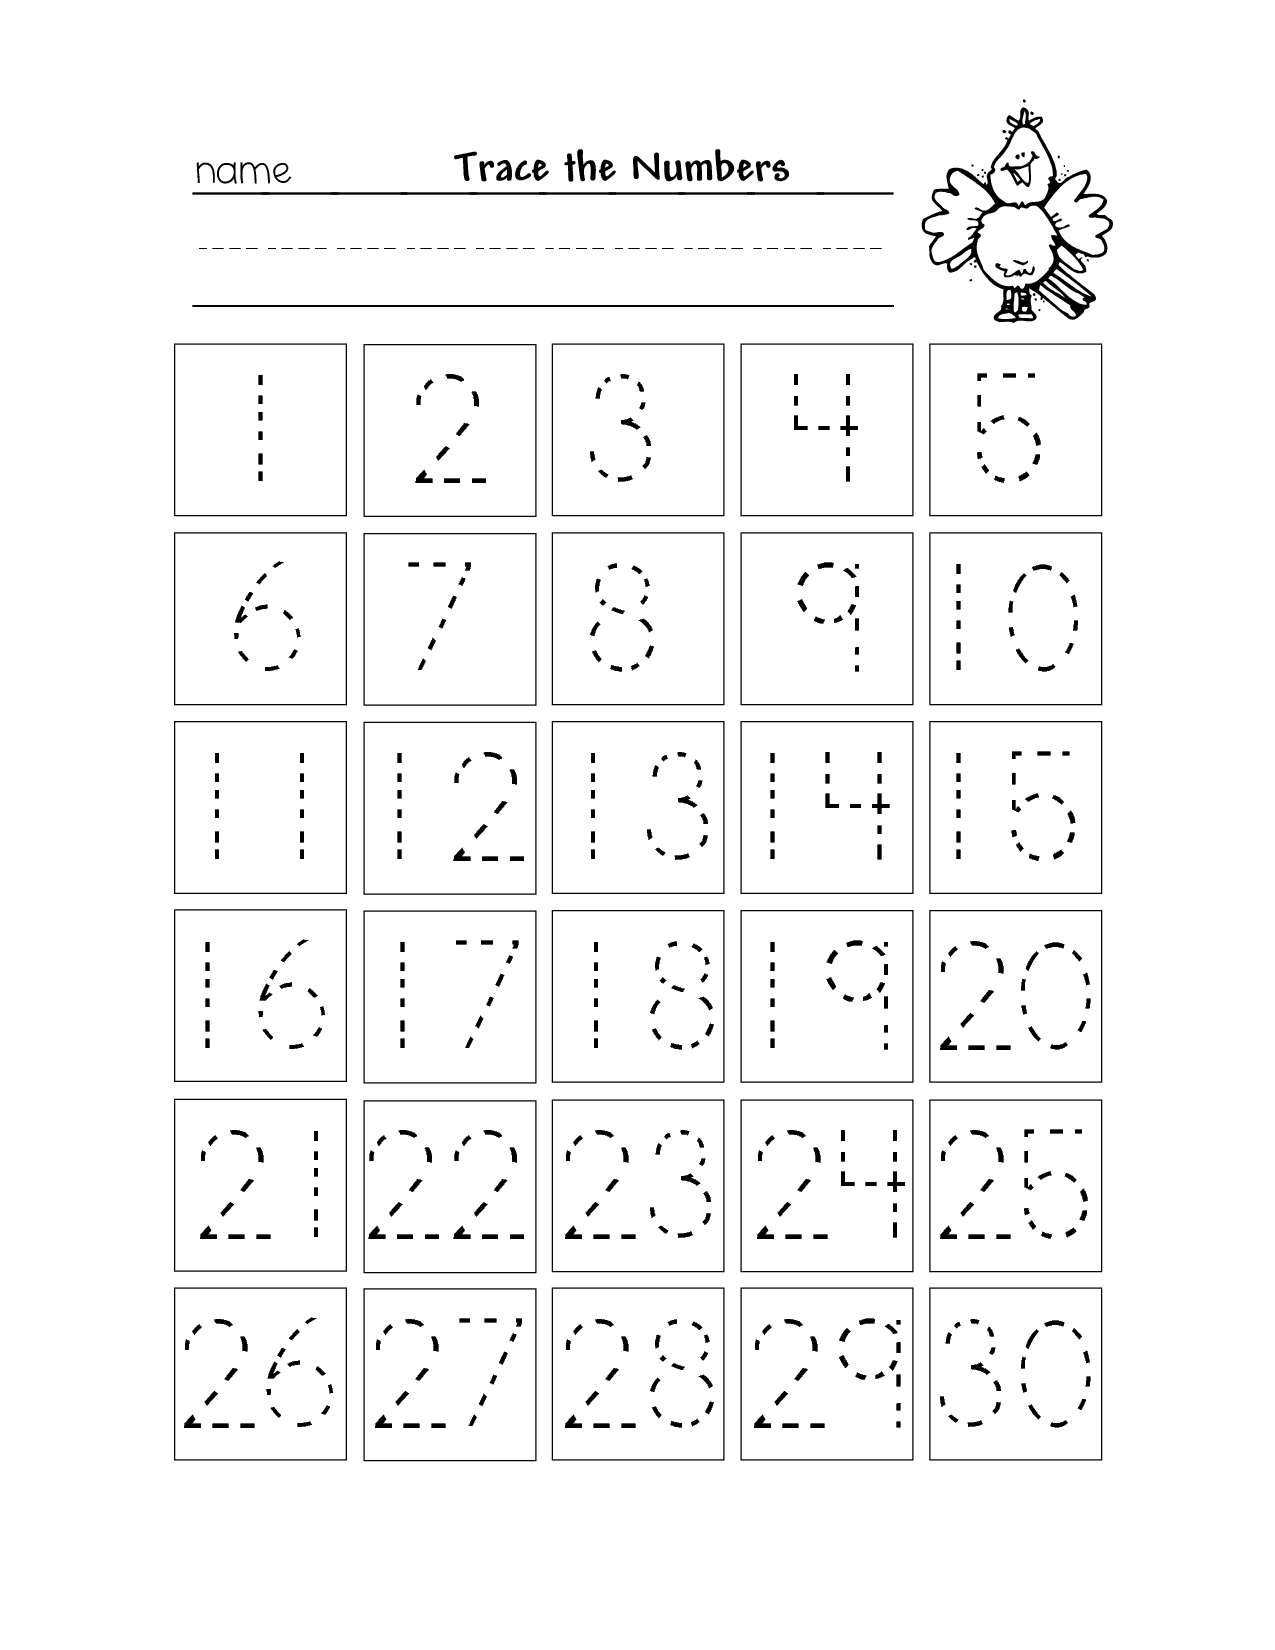 13-best-images-of-numbers-1-25-worksheets-tracing-numbers-1-30-worksheets-pre-k-printable